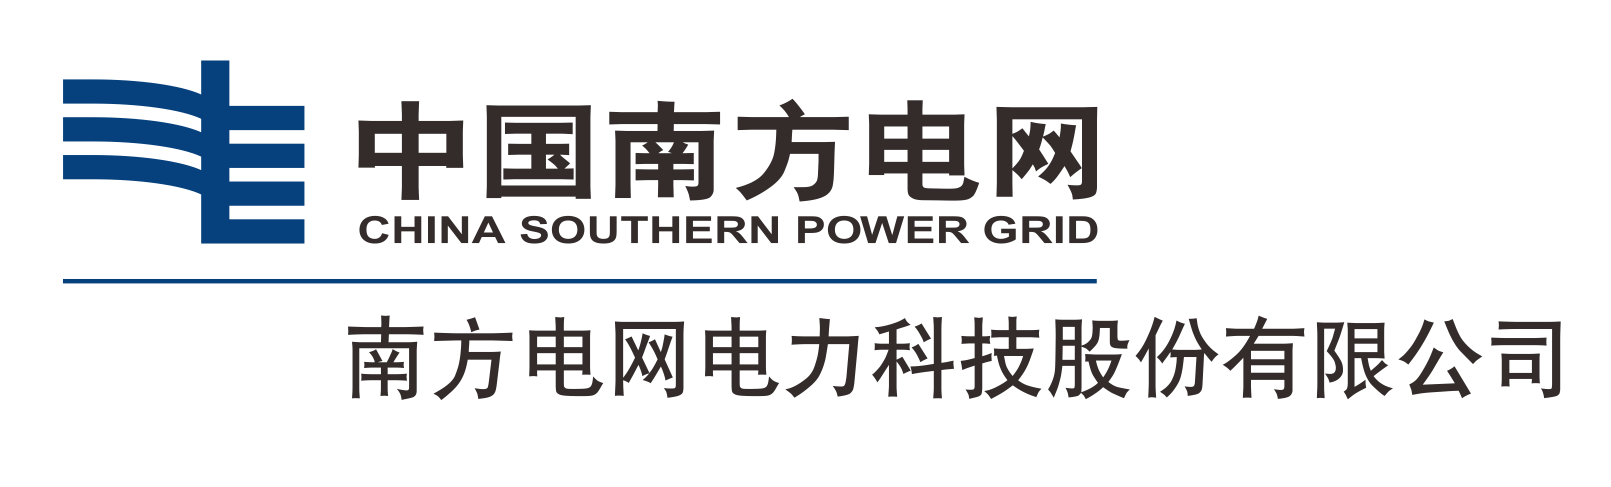 南方電網電力科技股份有限公司